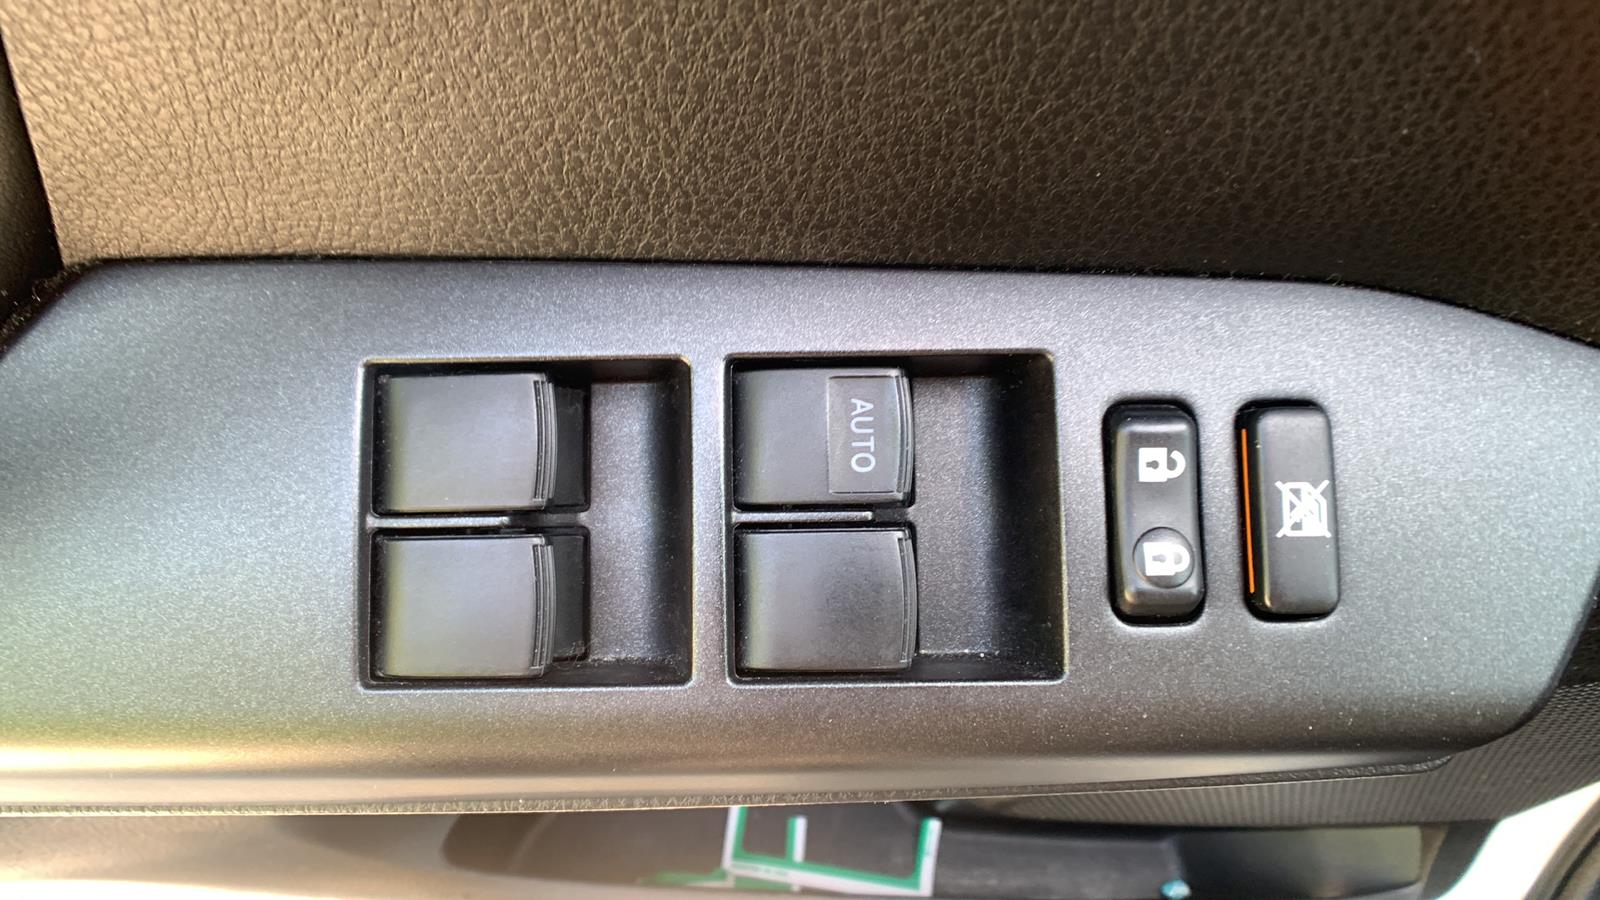 2016 Toyota RAV4 Hybrid Sport Utility